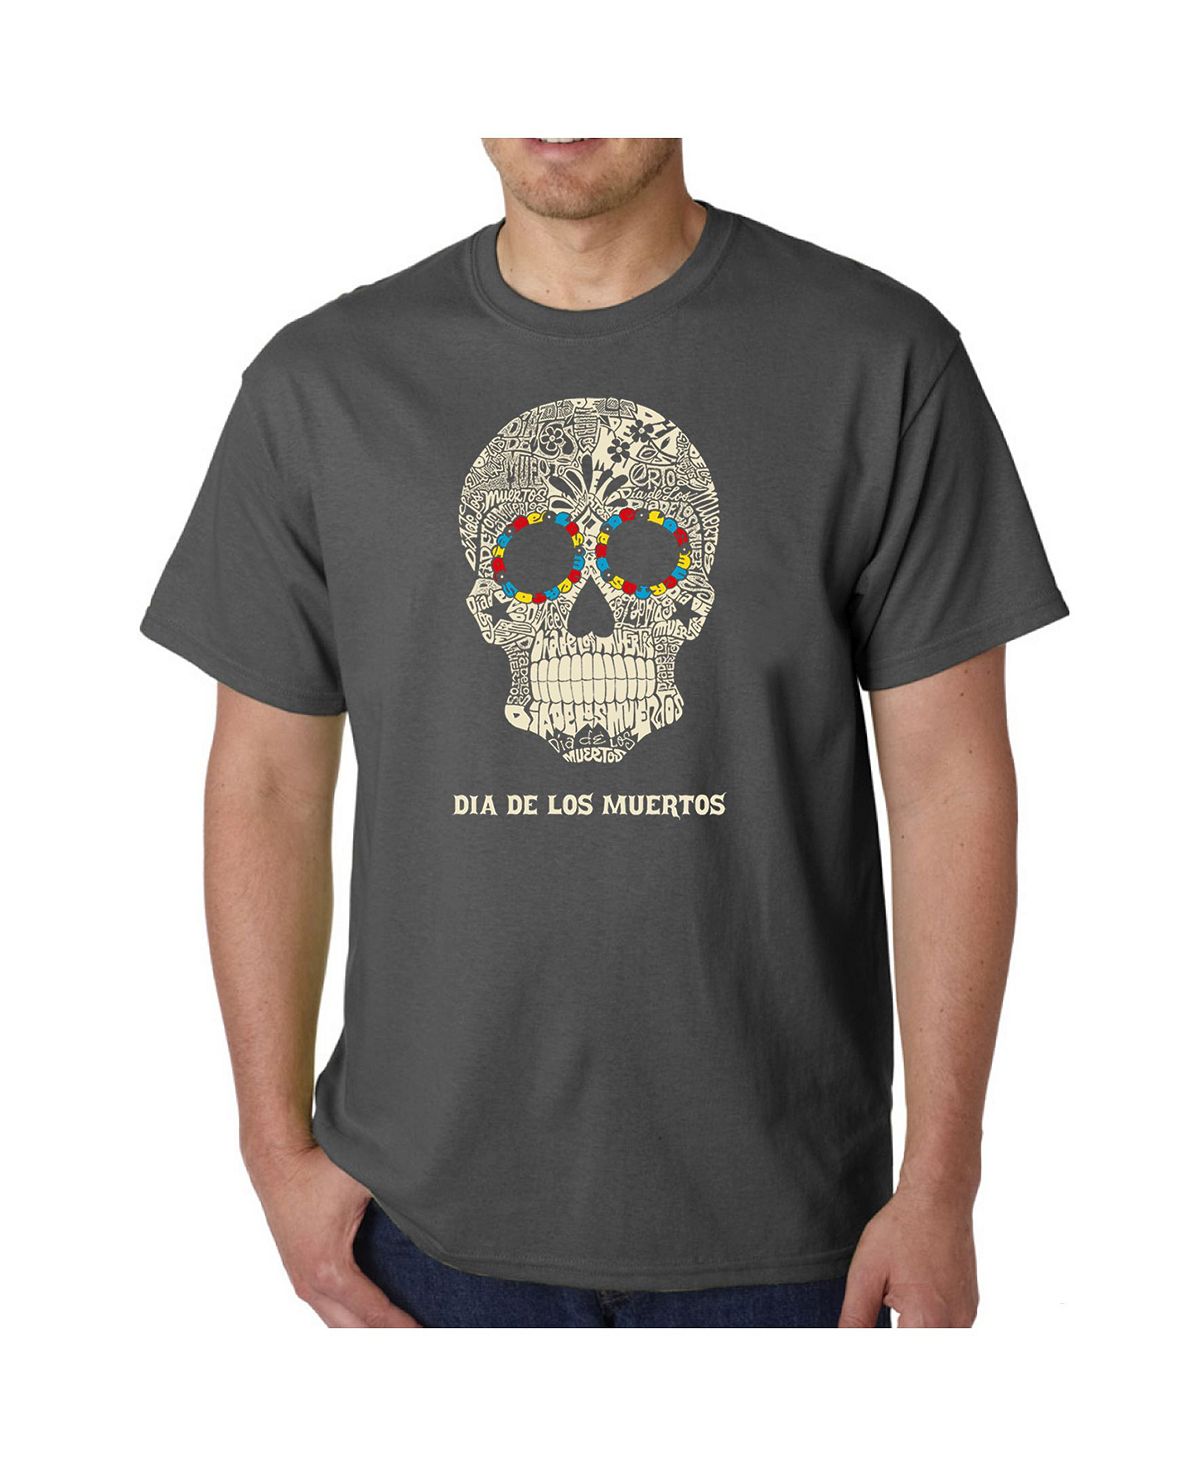 Мужская футболка word art - dia de los muertos LA Pop Art, серый мужская футболка сахарный череп с цветами l черный